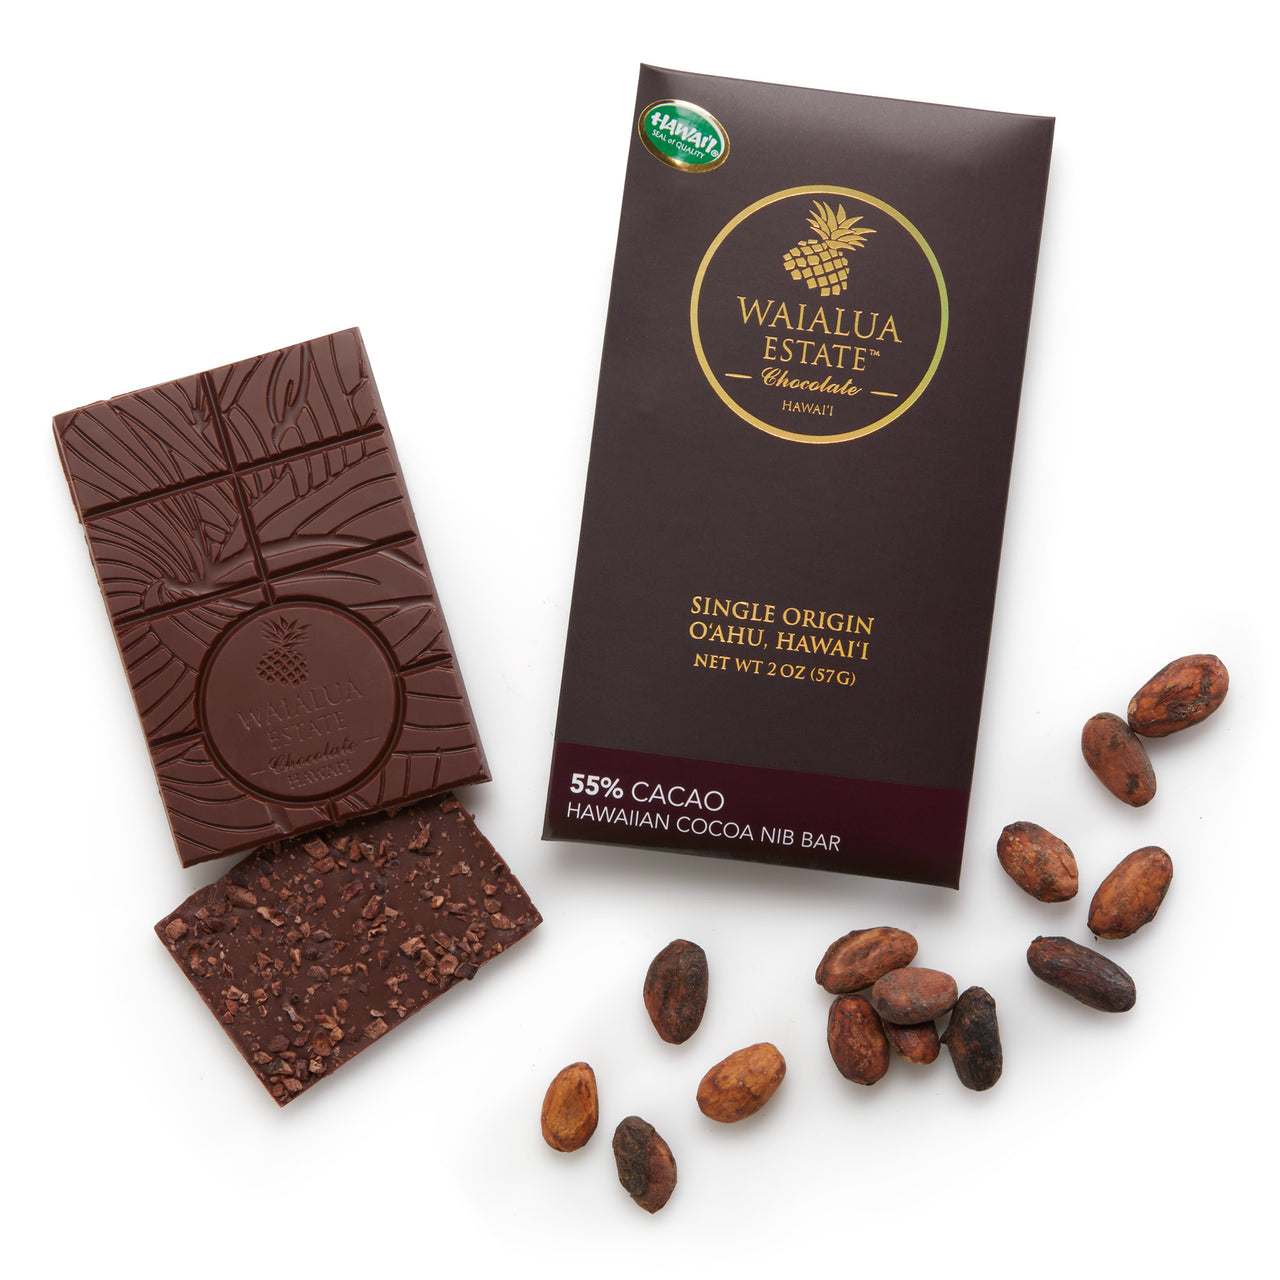 55% Cacao Hawaiian Cocoa Nib Bar